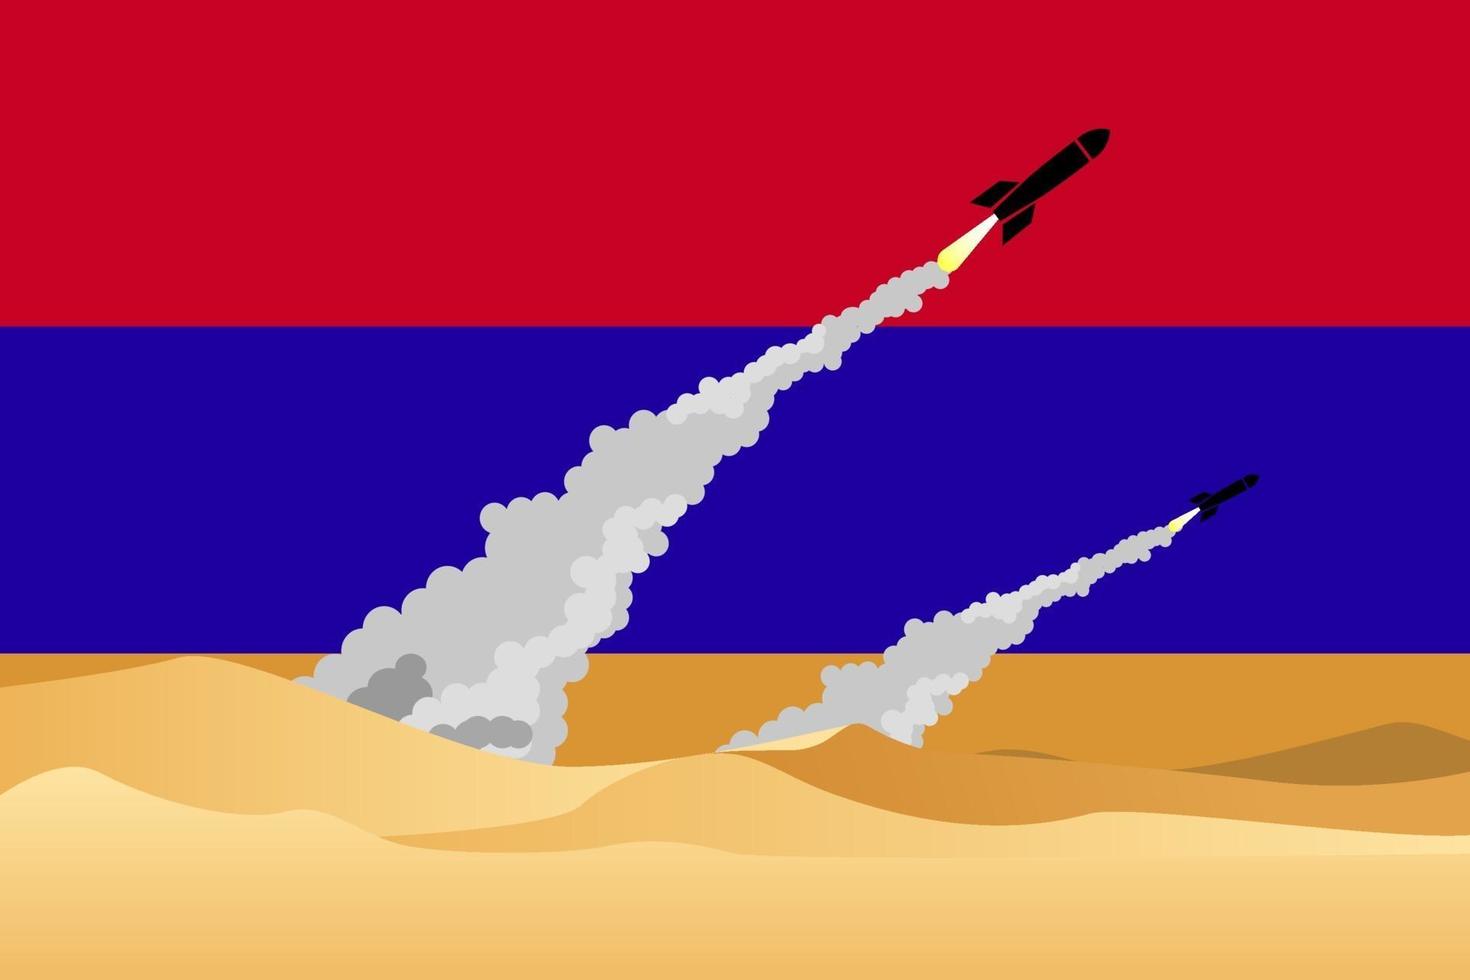 ilustração de disparar mísseis no fundo da bandeira da Armênia. vetor